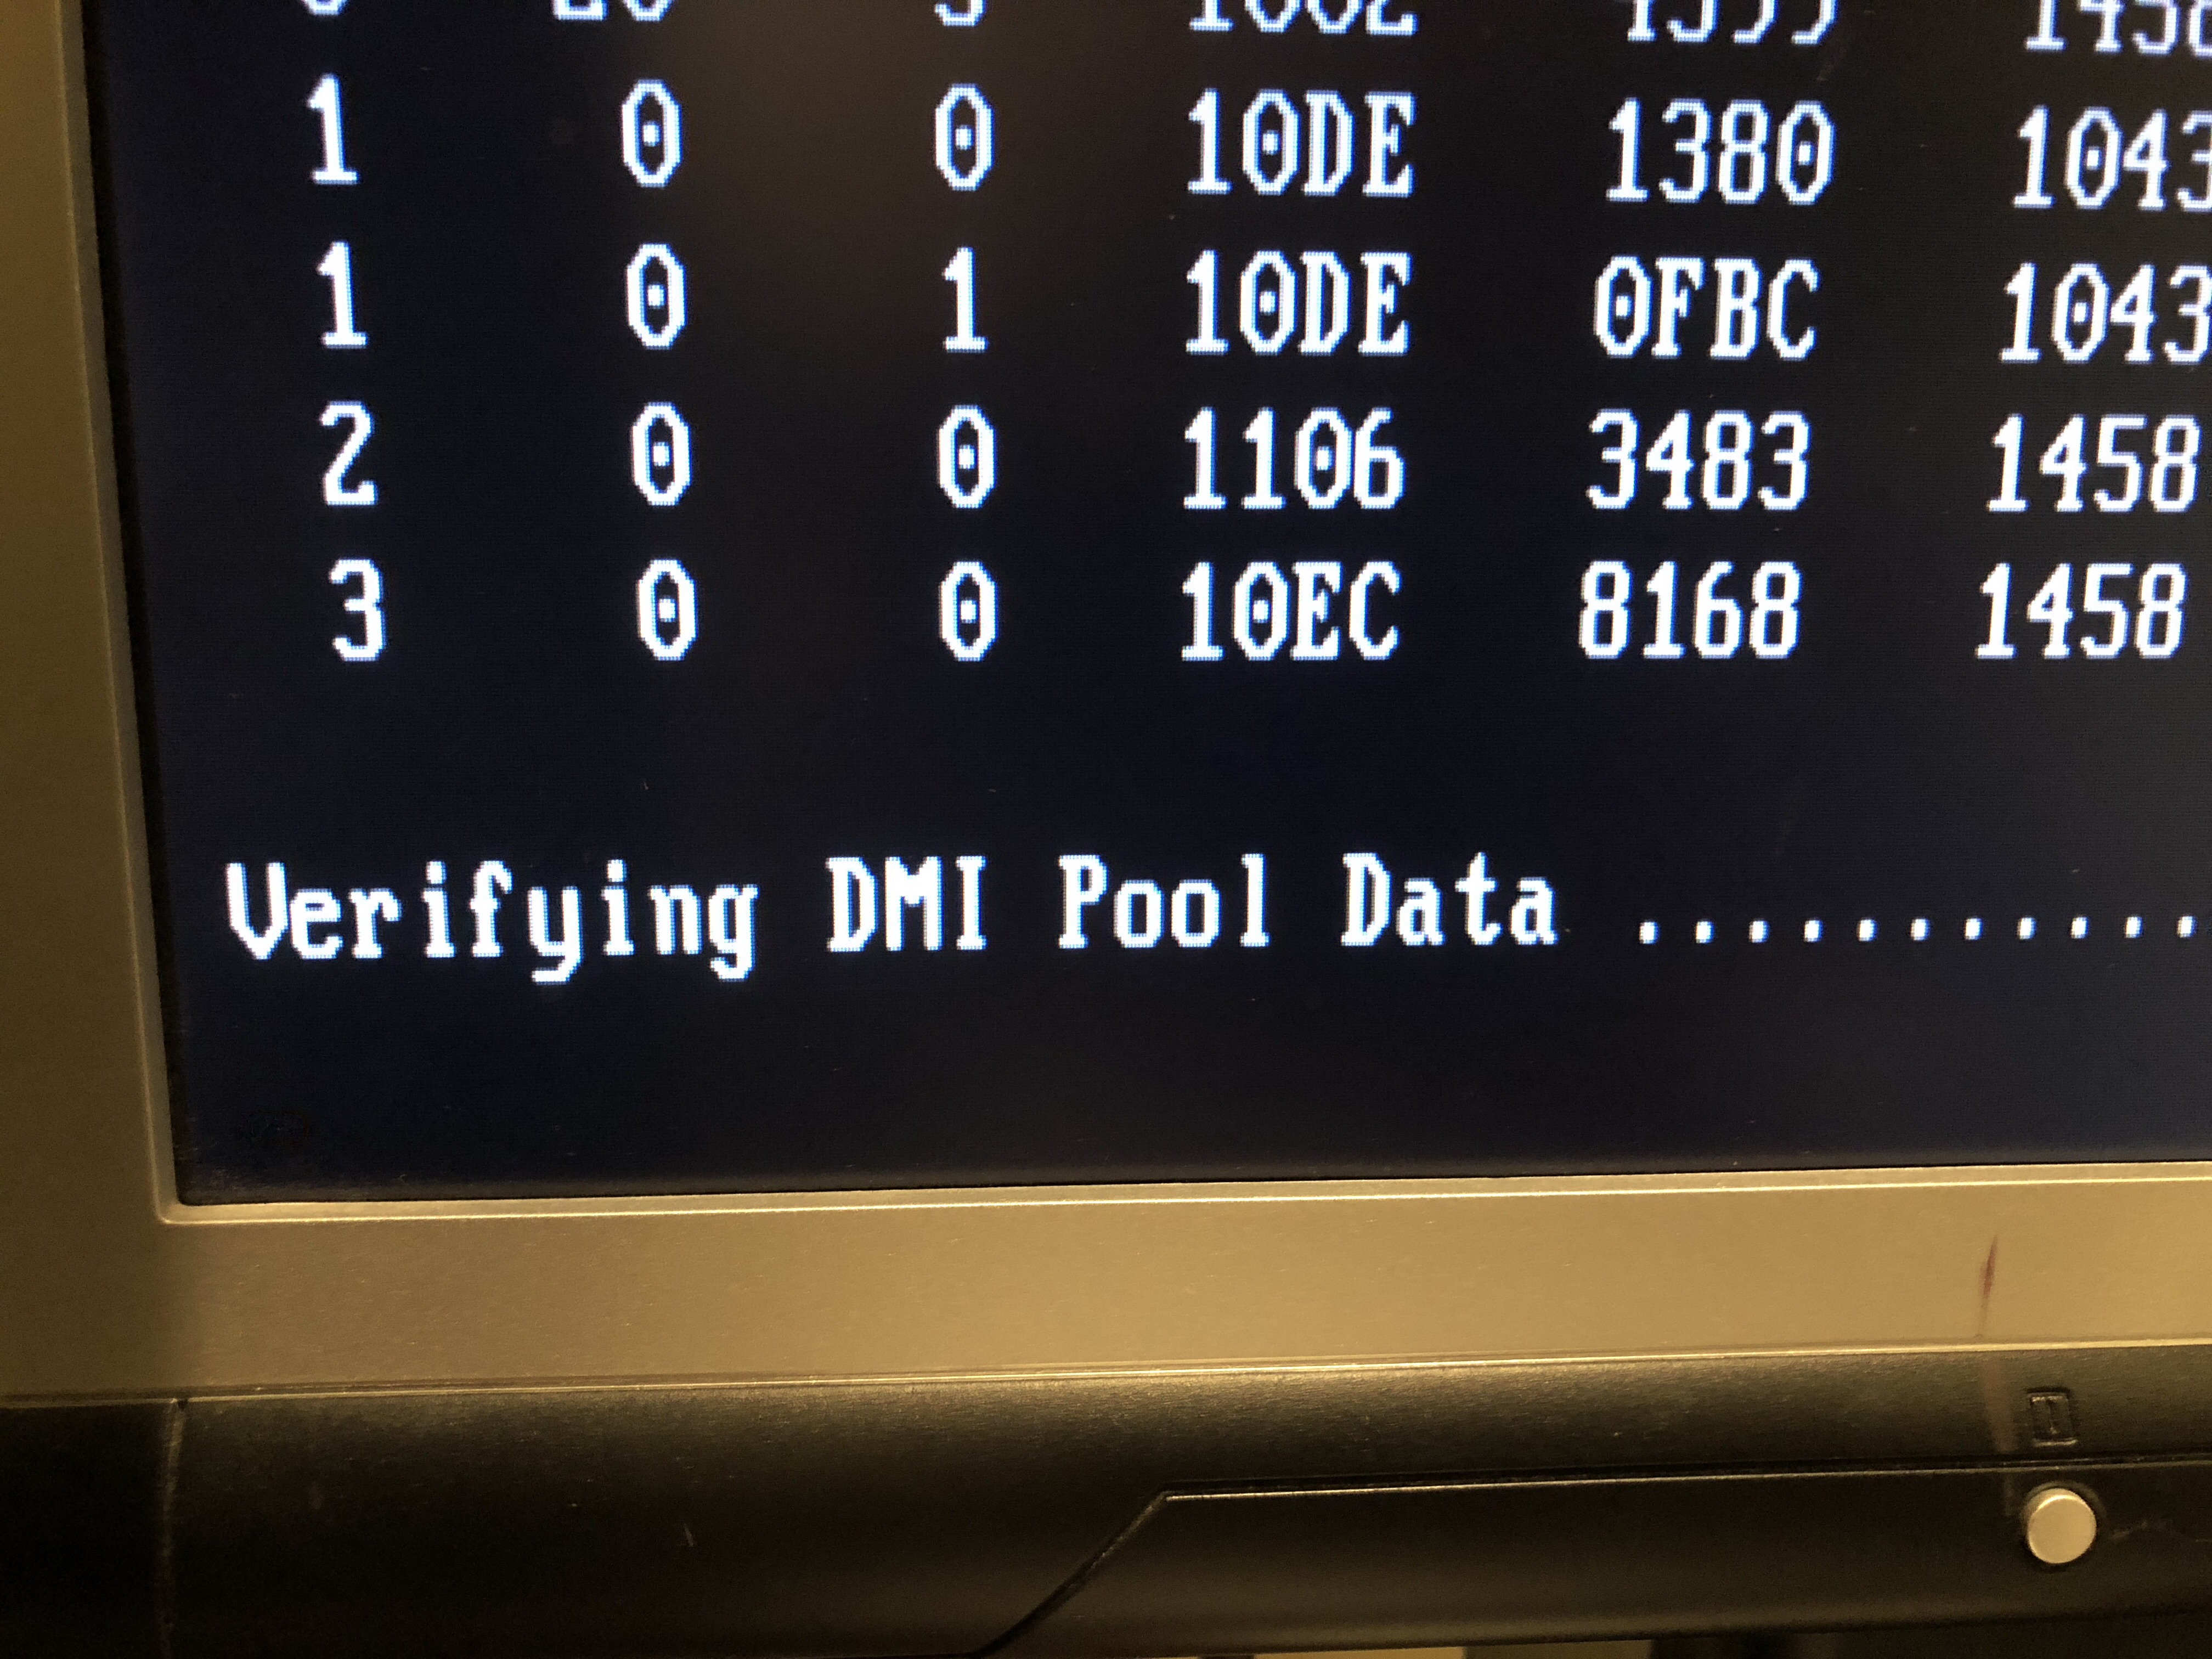 Dmi pool data. Verifying DMI Pool data. Verifying DMI Pool data и дальше. Verifying DMI Pool data память. Verifying DMI Pool data виндовс 7.